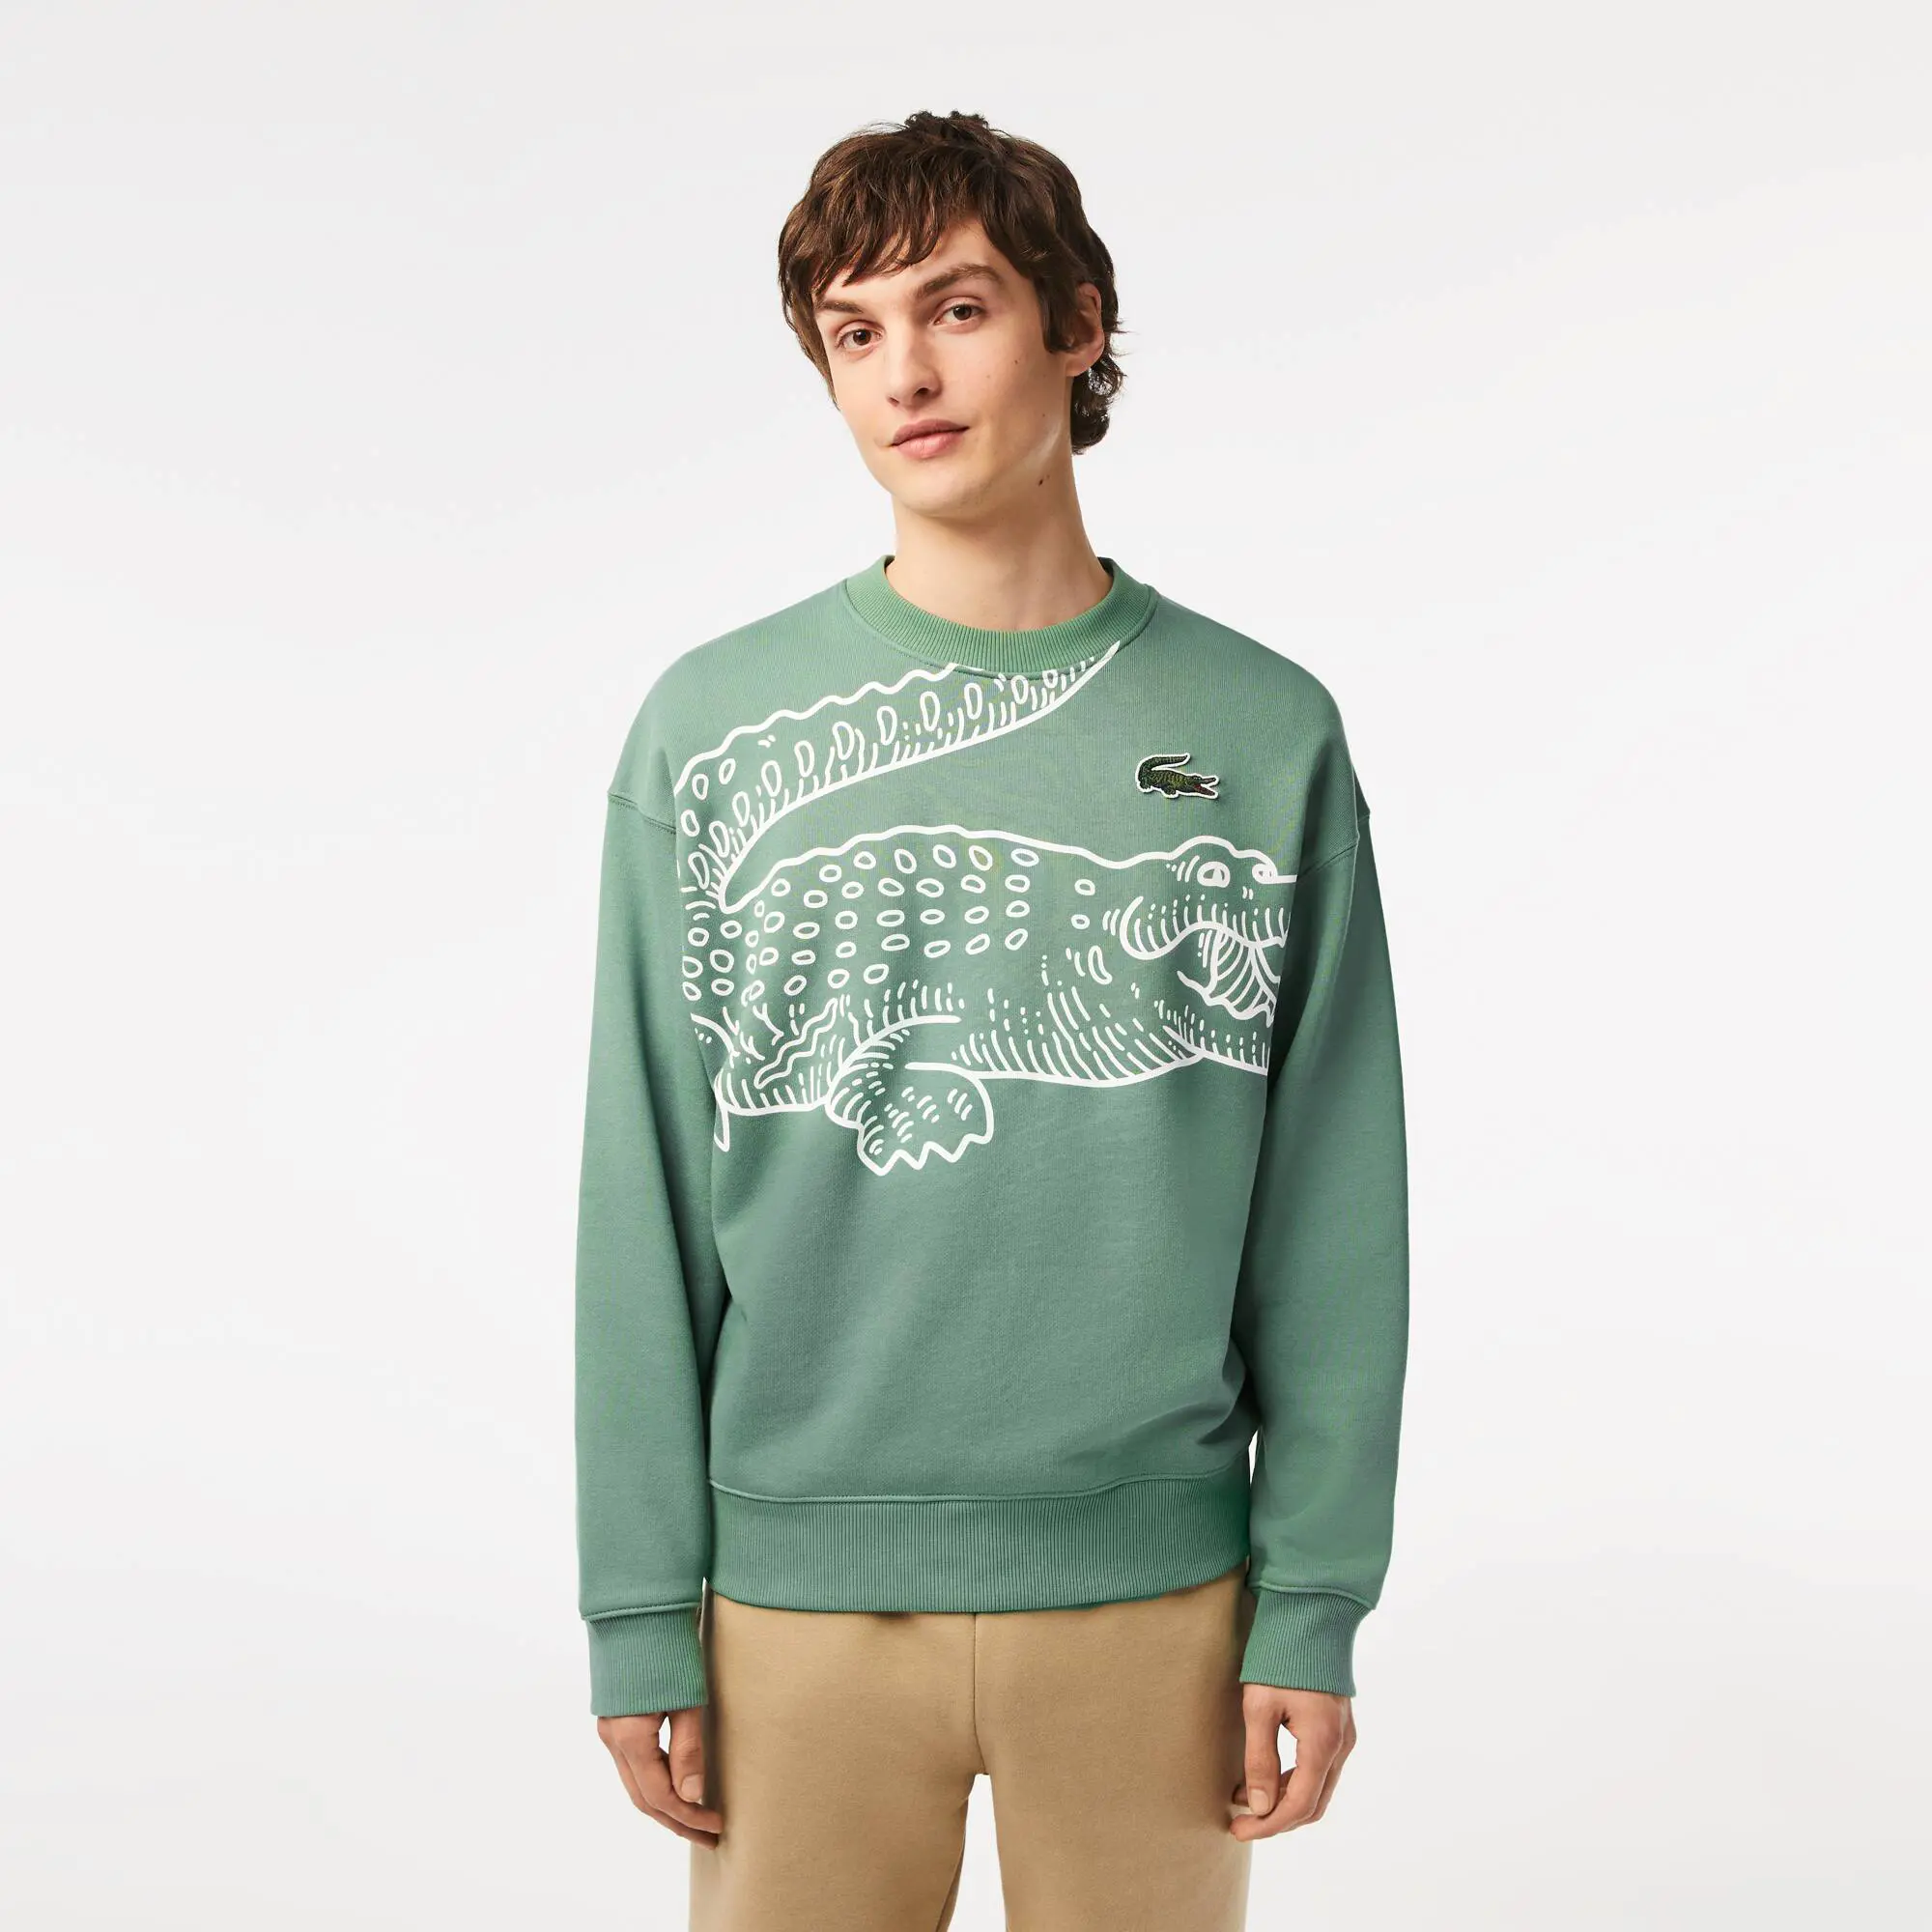 Lacoste Men’s Lacoste Round Neck Loose Fit Croc Print Jogger Sweatshirt. 1